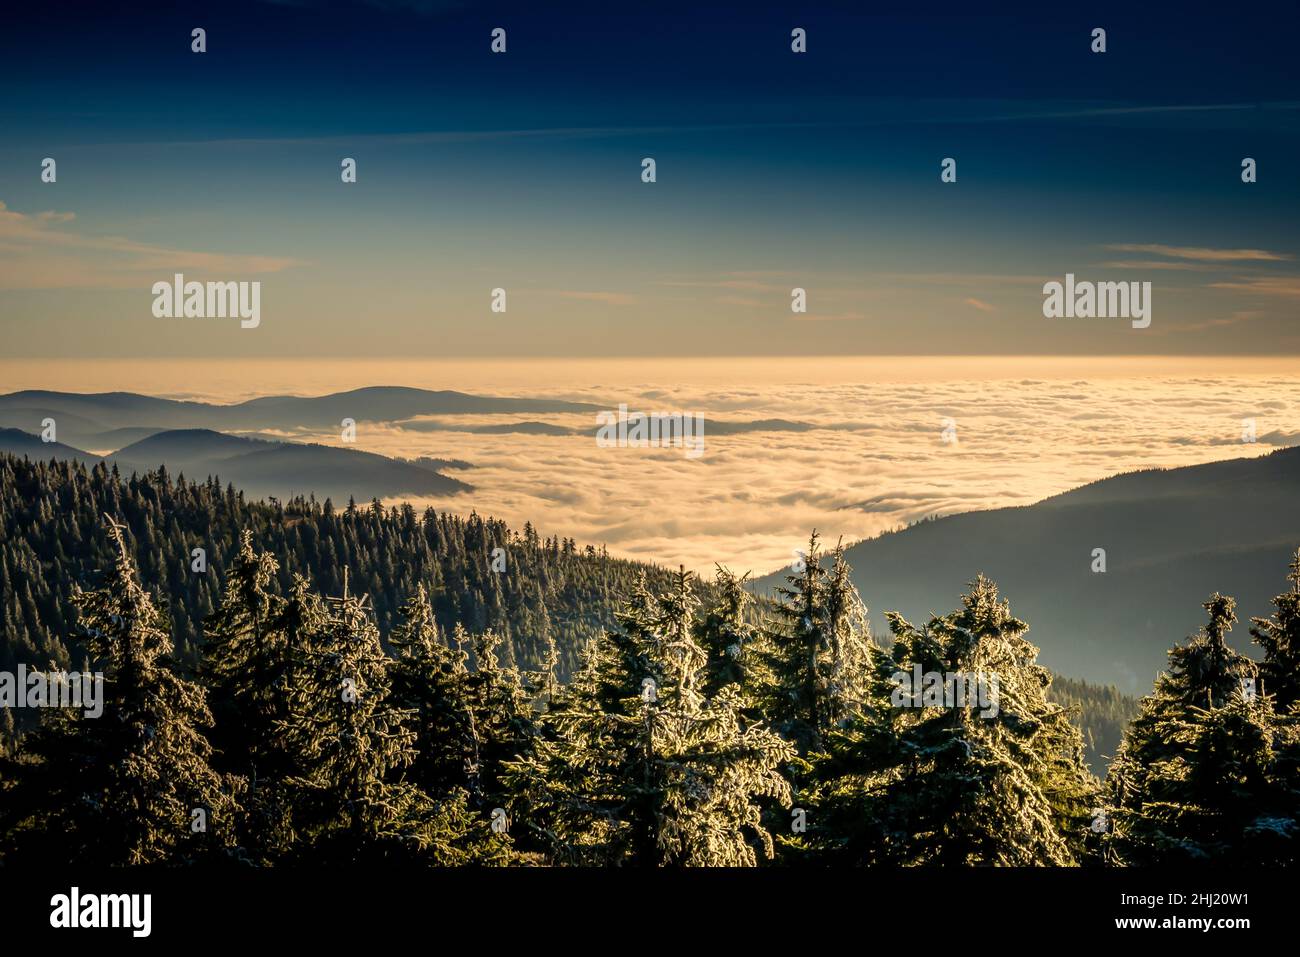 Paesaggio panoramico con alberi ricoperti di rime, vista da una fascia montatina alla valle piena di nubi basse durante l'inversione di temperatura. Jeseniky. Foto Stock